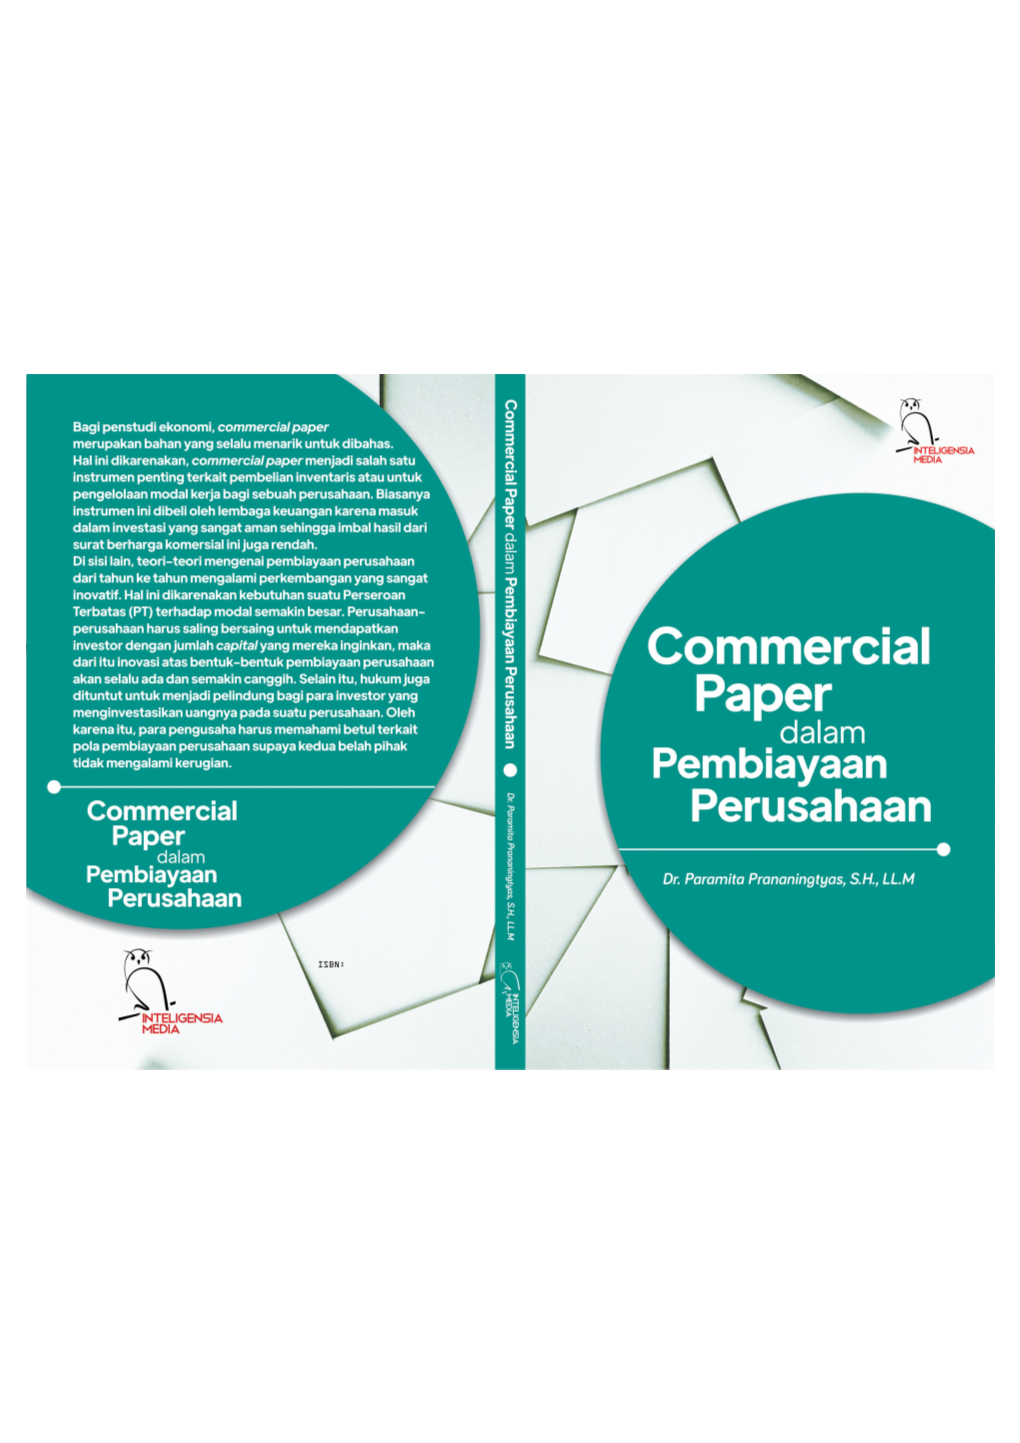 Commercial Paper Dalam Pembiayaan Perusahaan